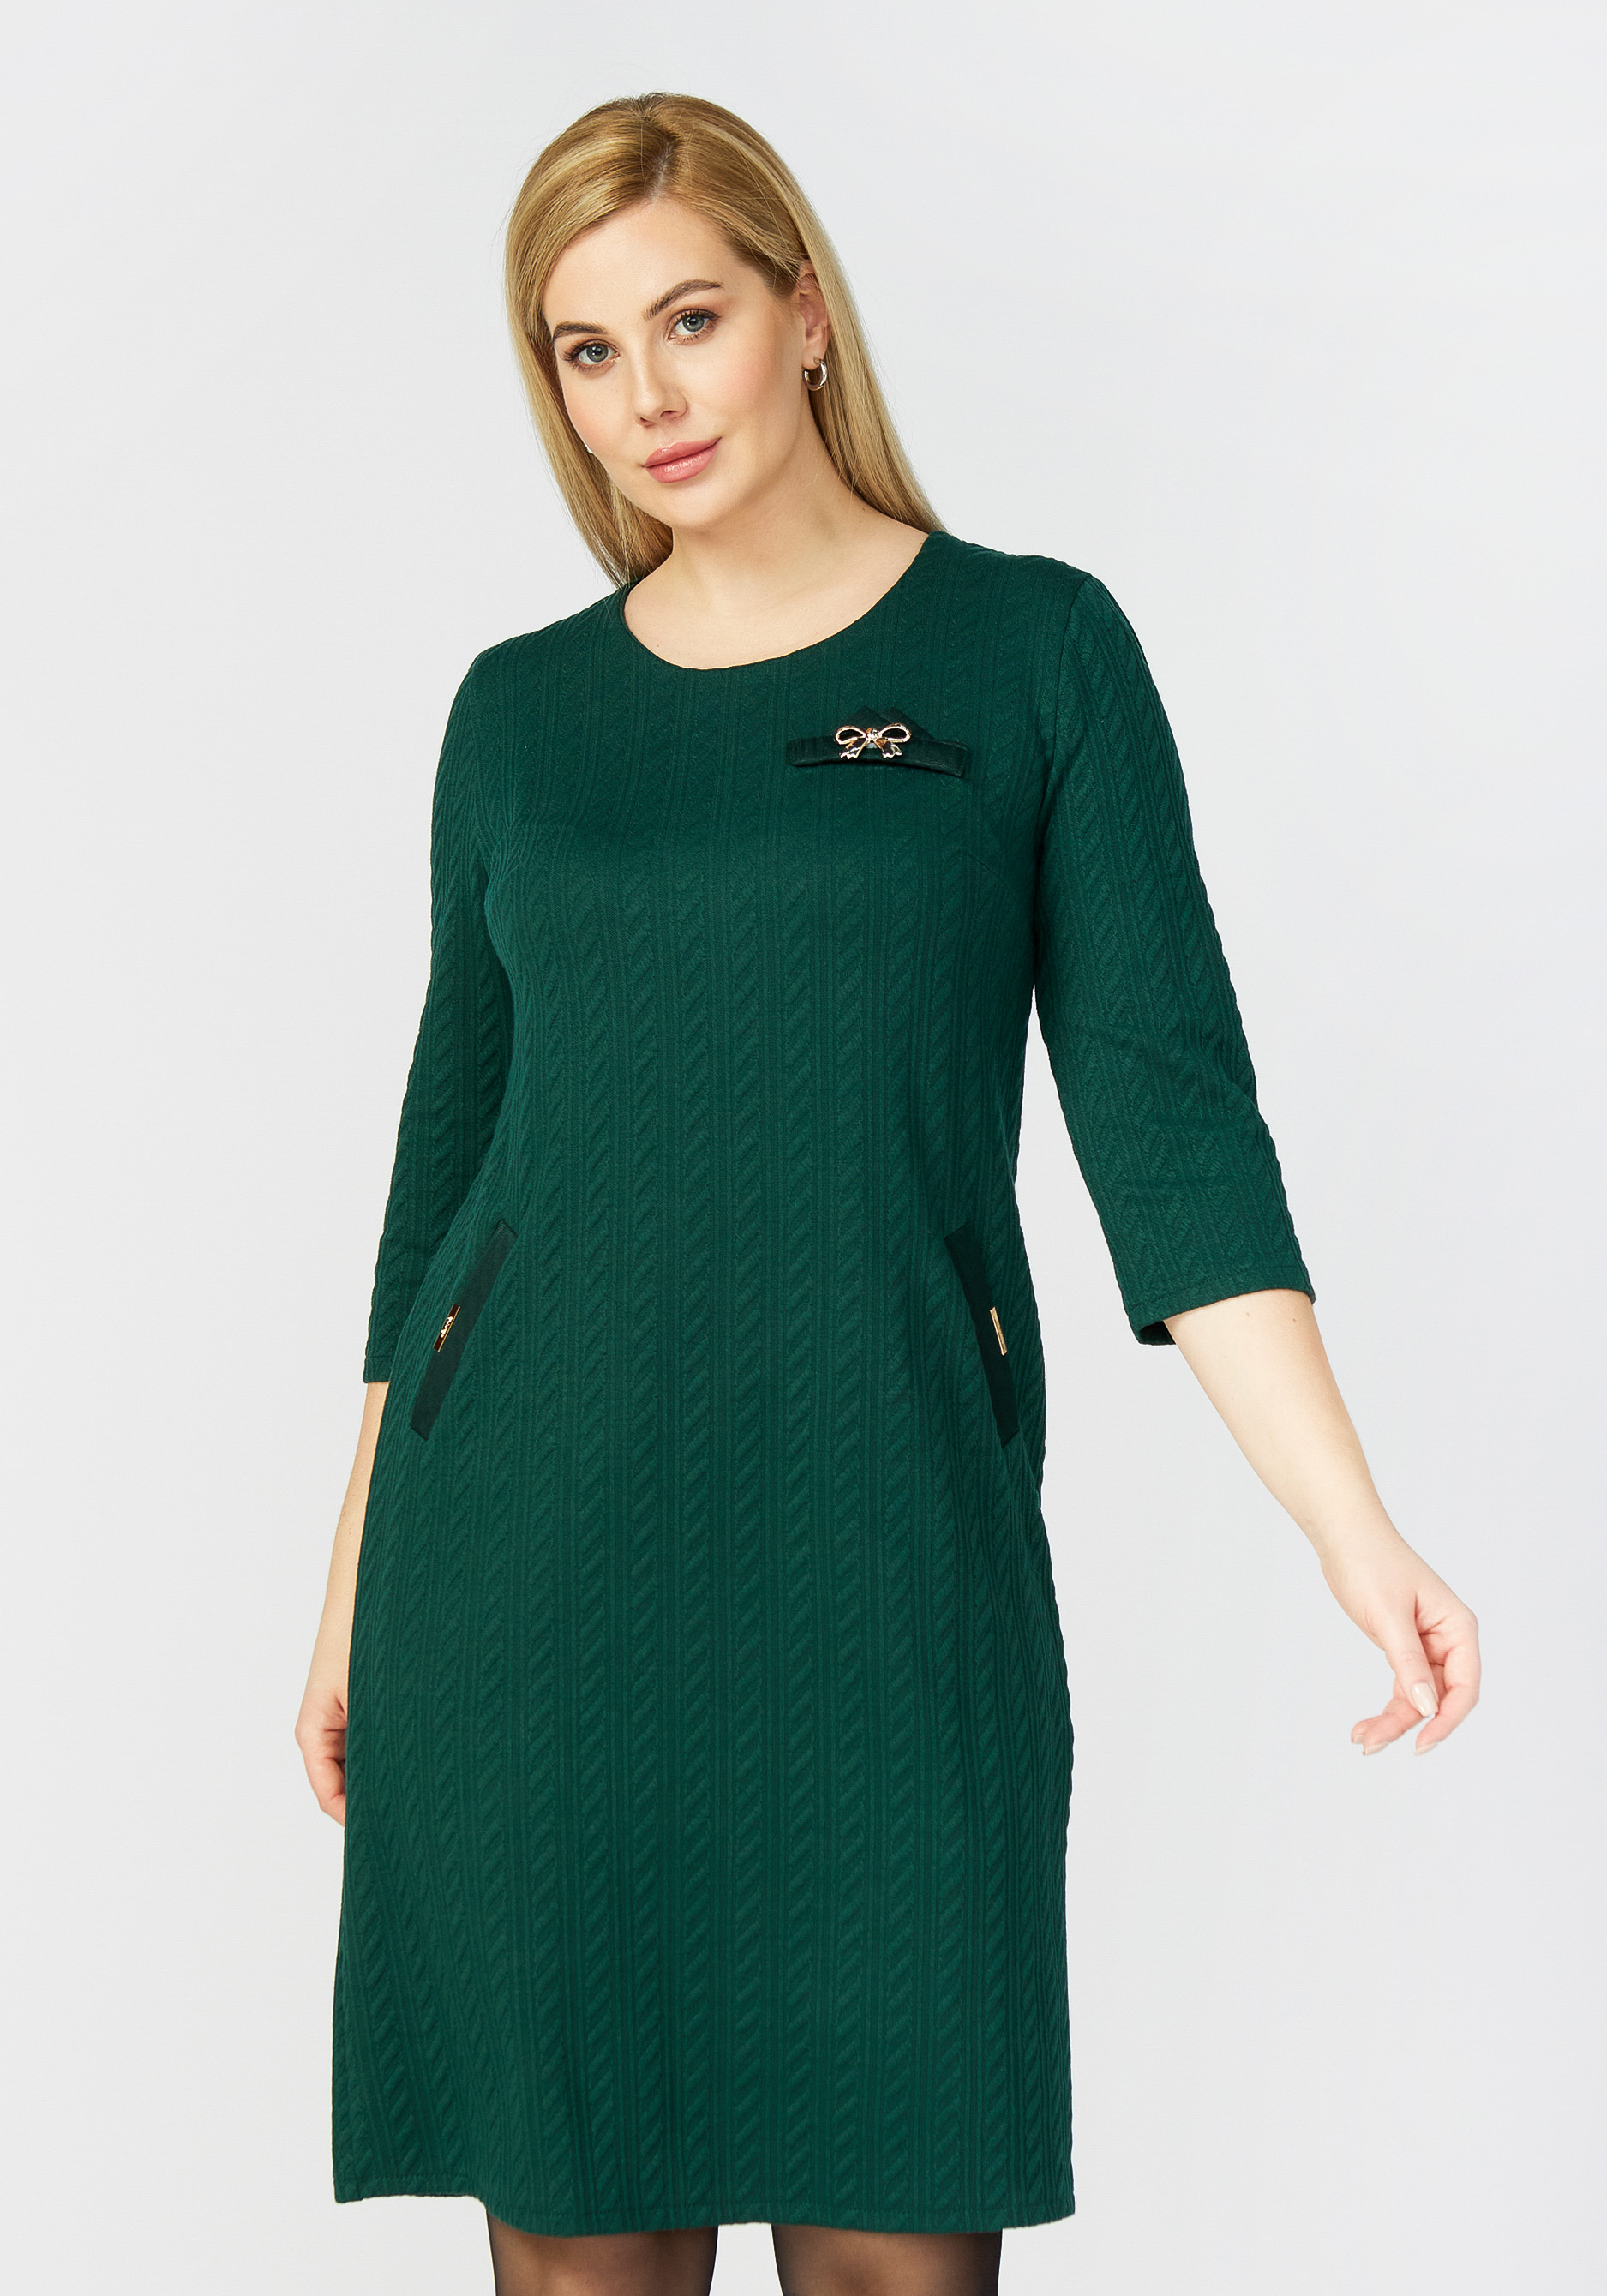 Платье "Эприл", размер 54, цвет зеленый - фото 5